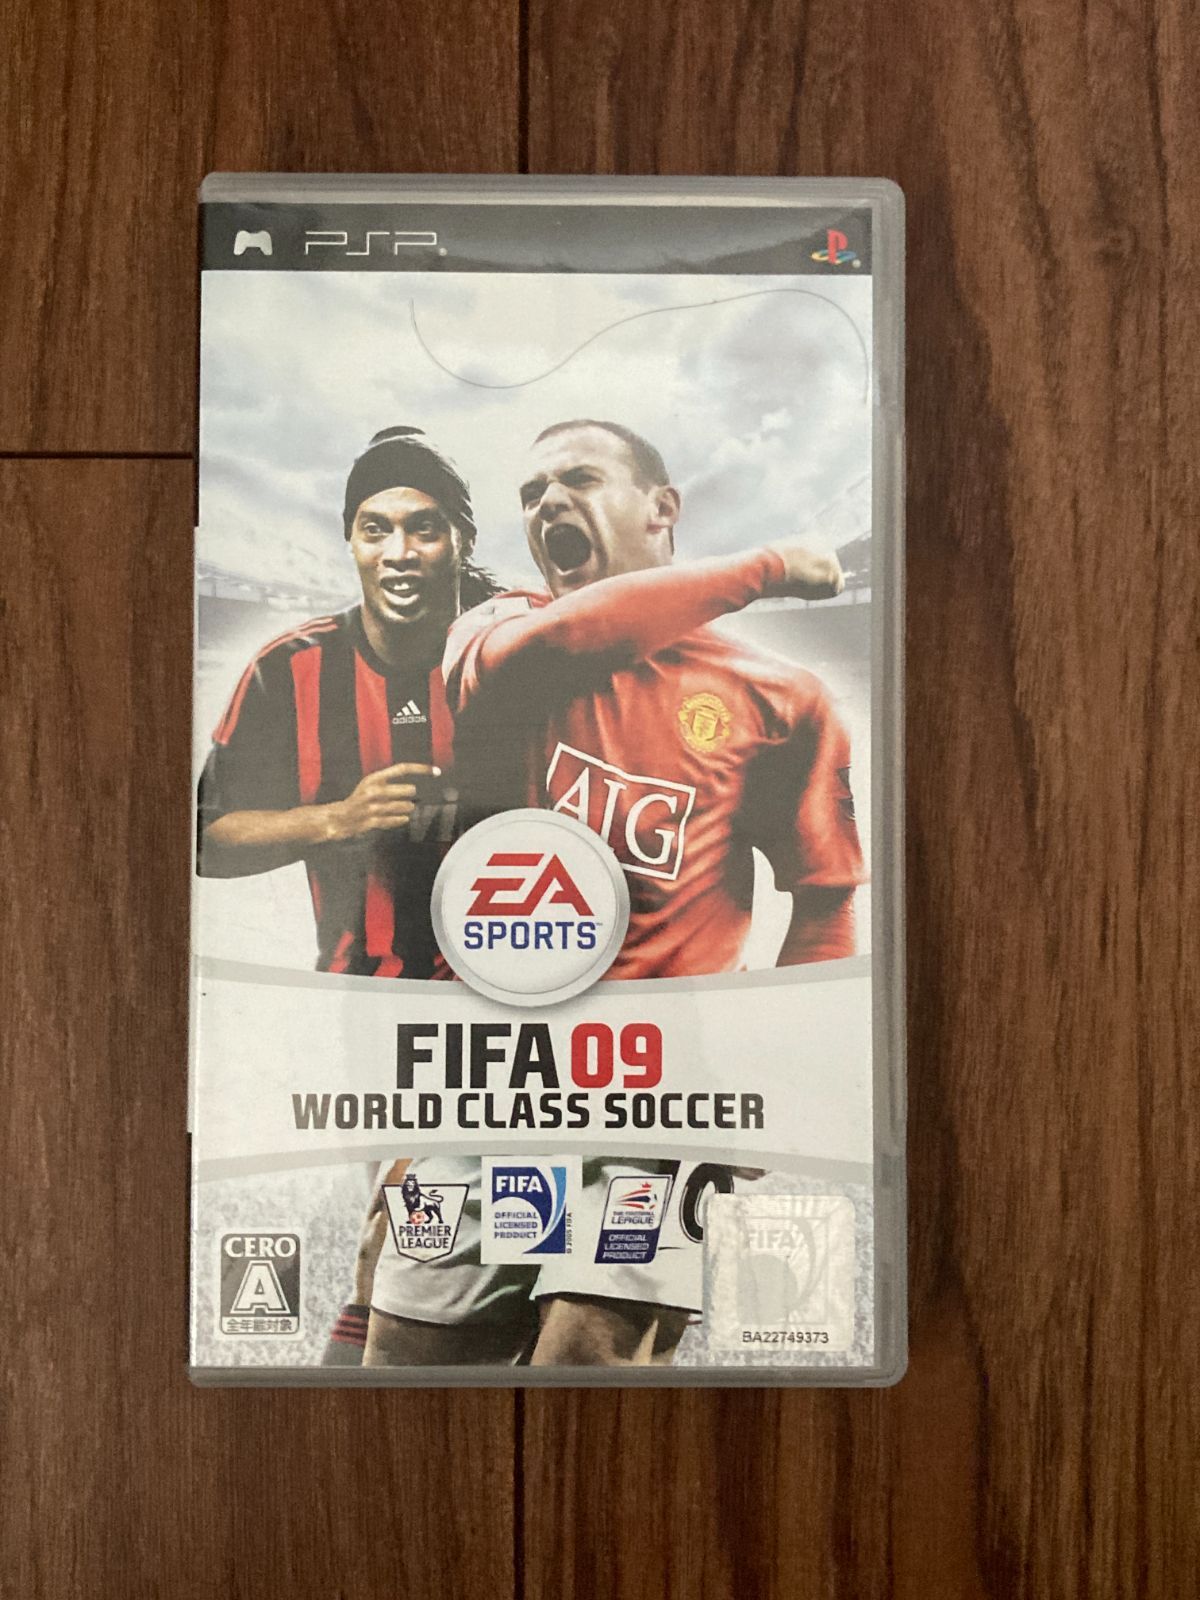 ＰＳＰ　FIFA 09 ワールドクラスサッカー world class soccer　プレイステー　ションポータブル　Play Station  Portable